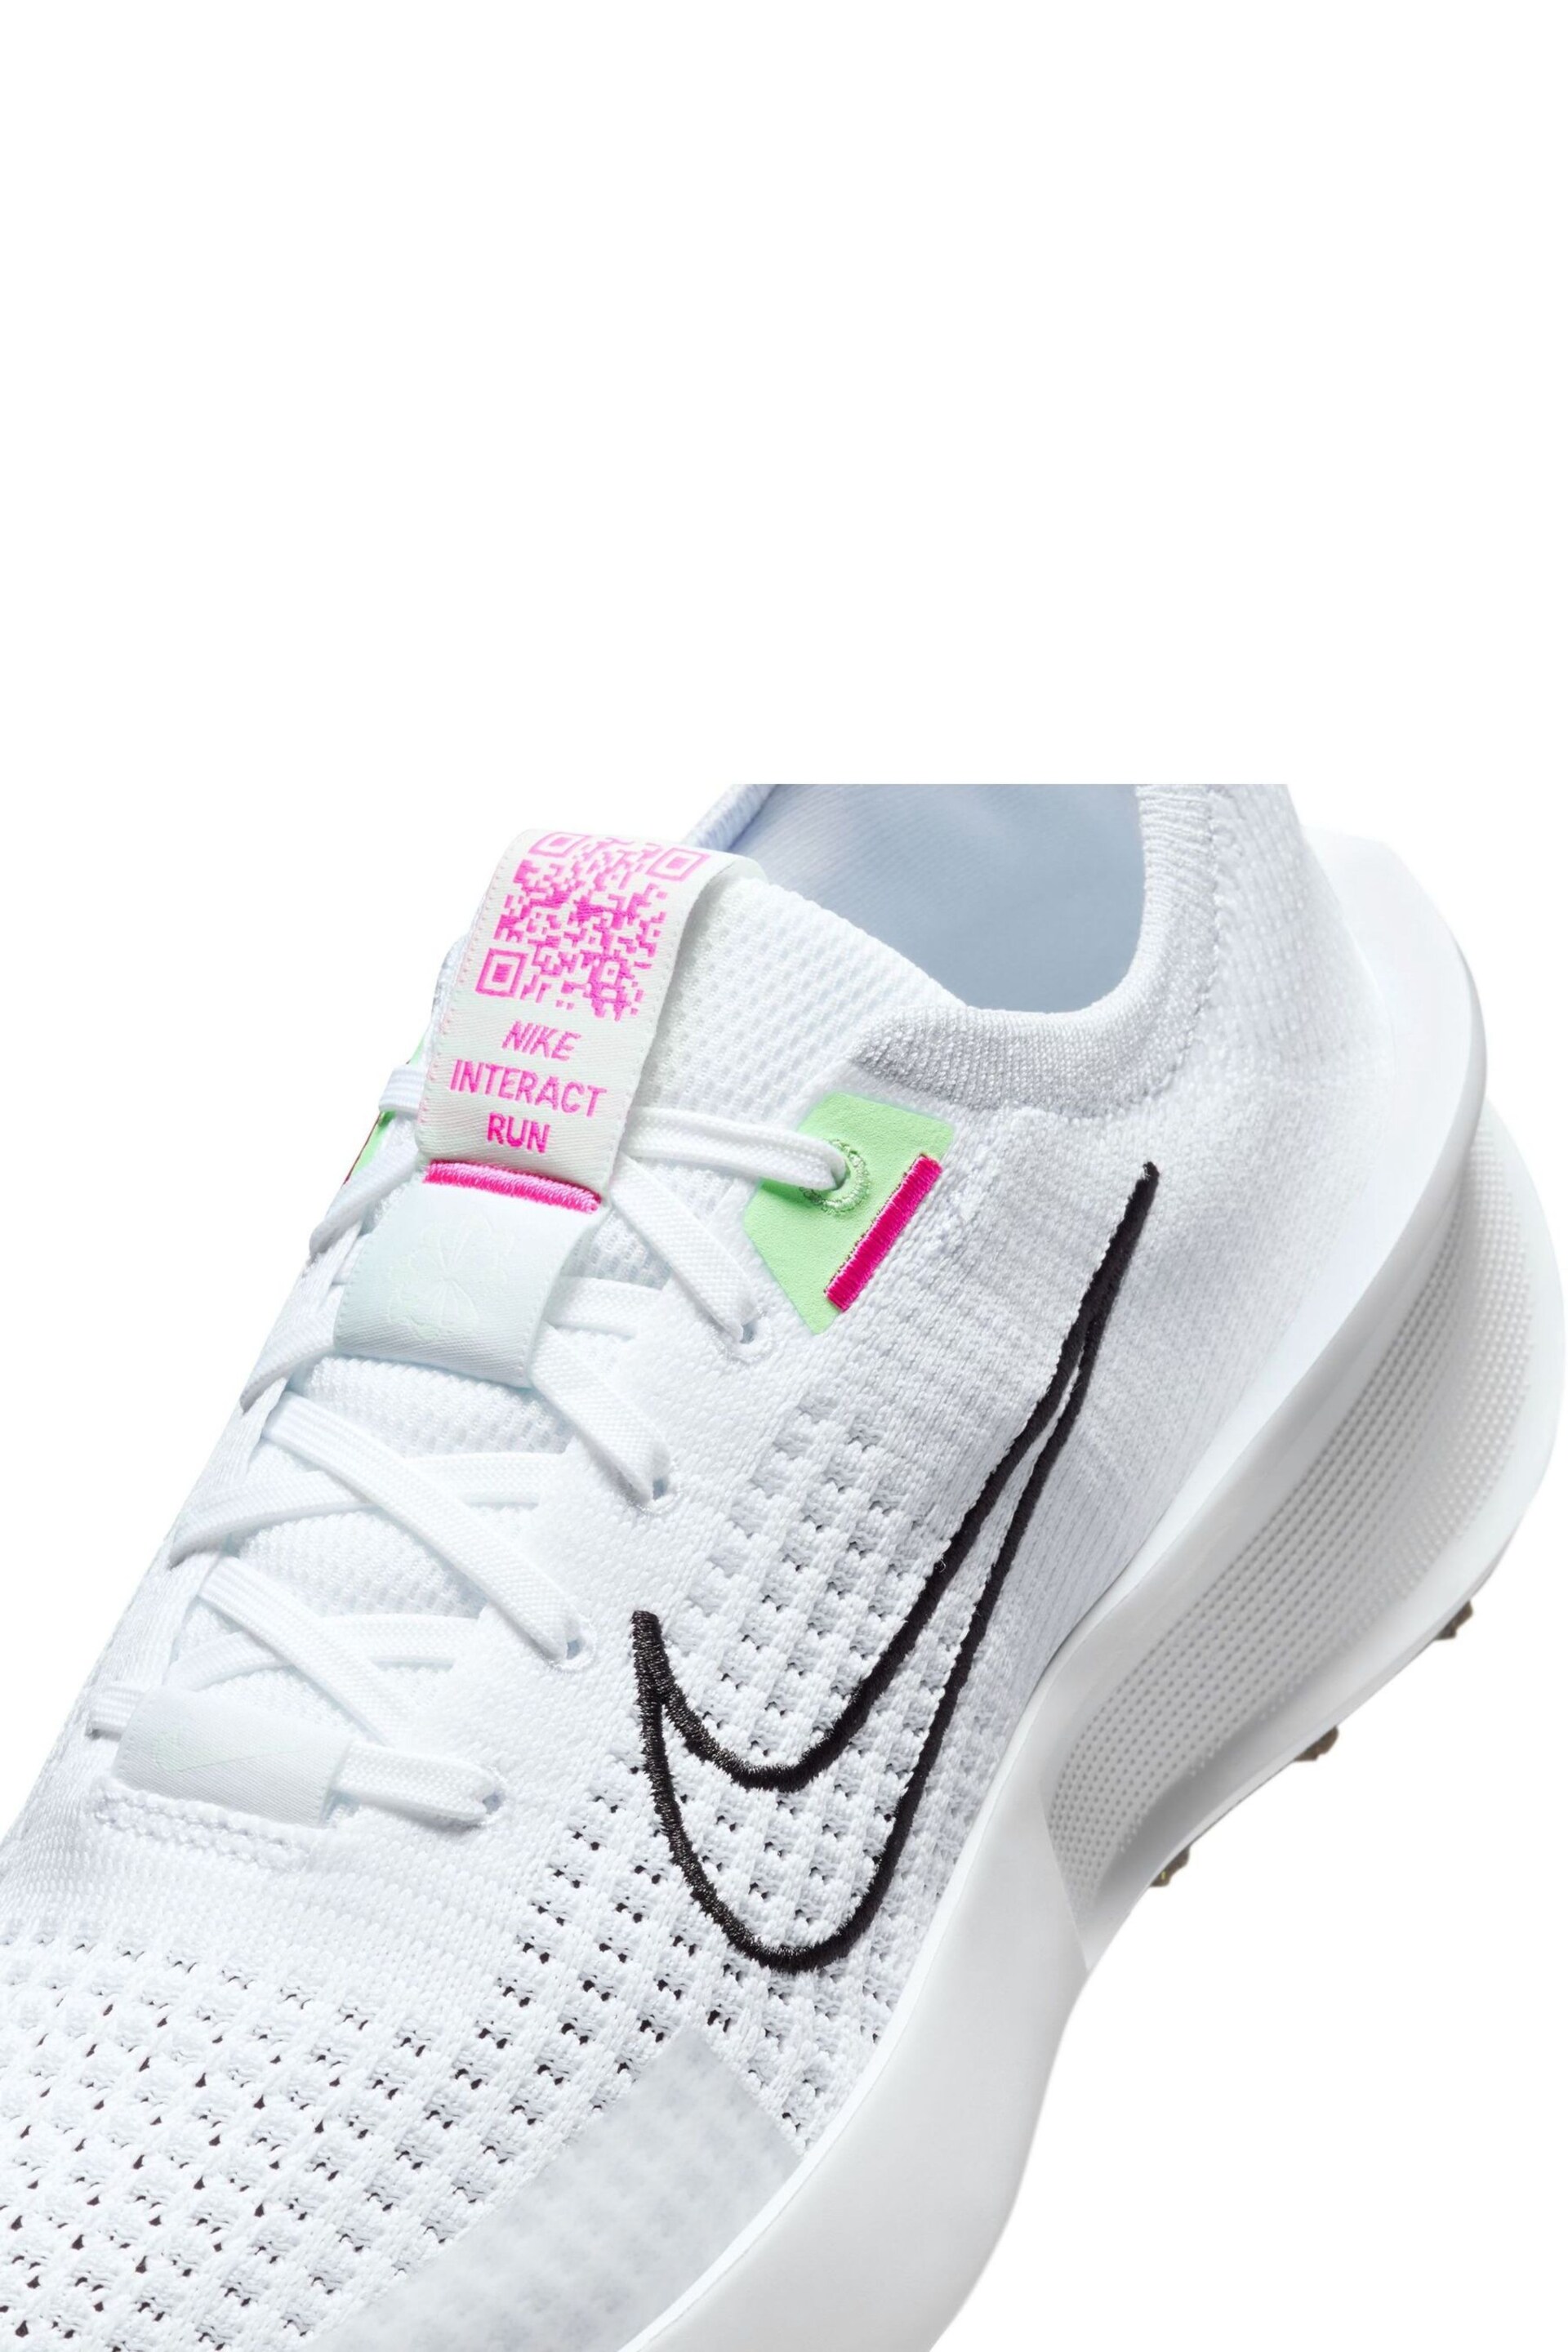 Nike White/Black Interact Run Running Trainers - Image 9 of 11